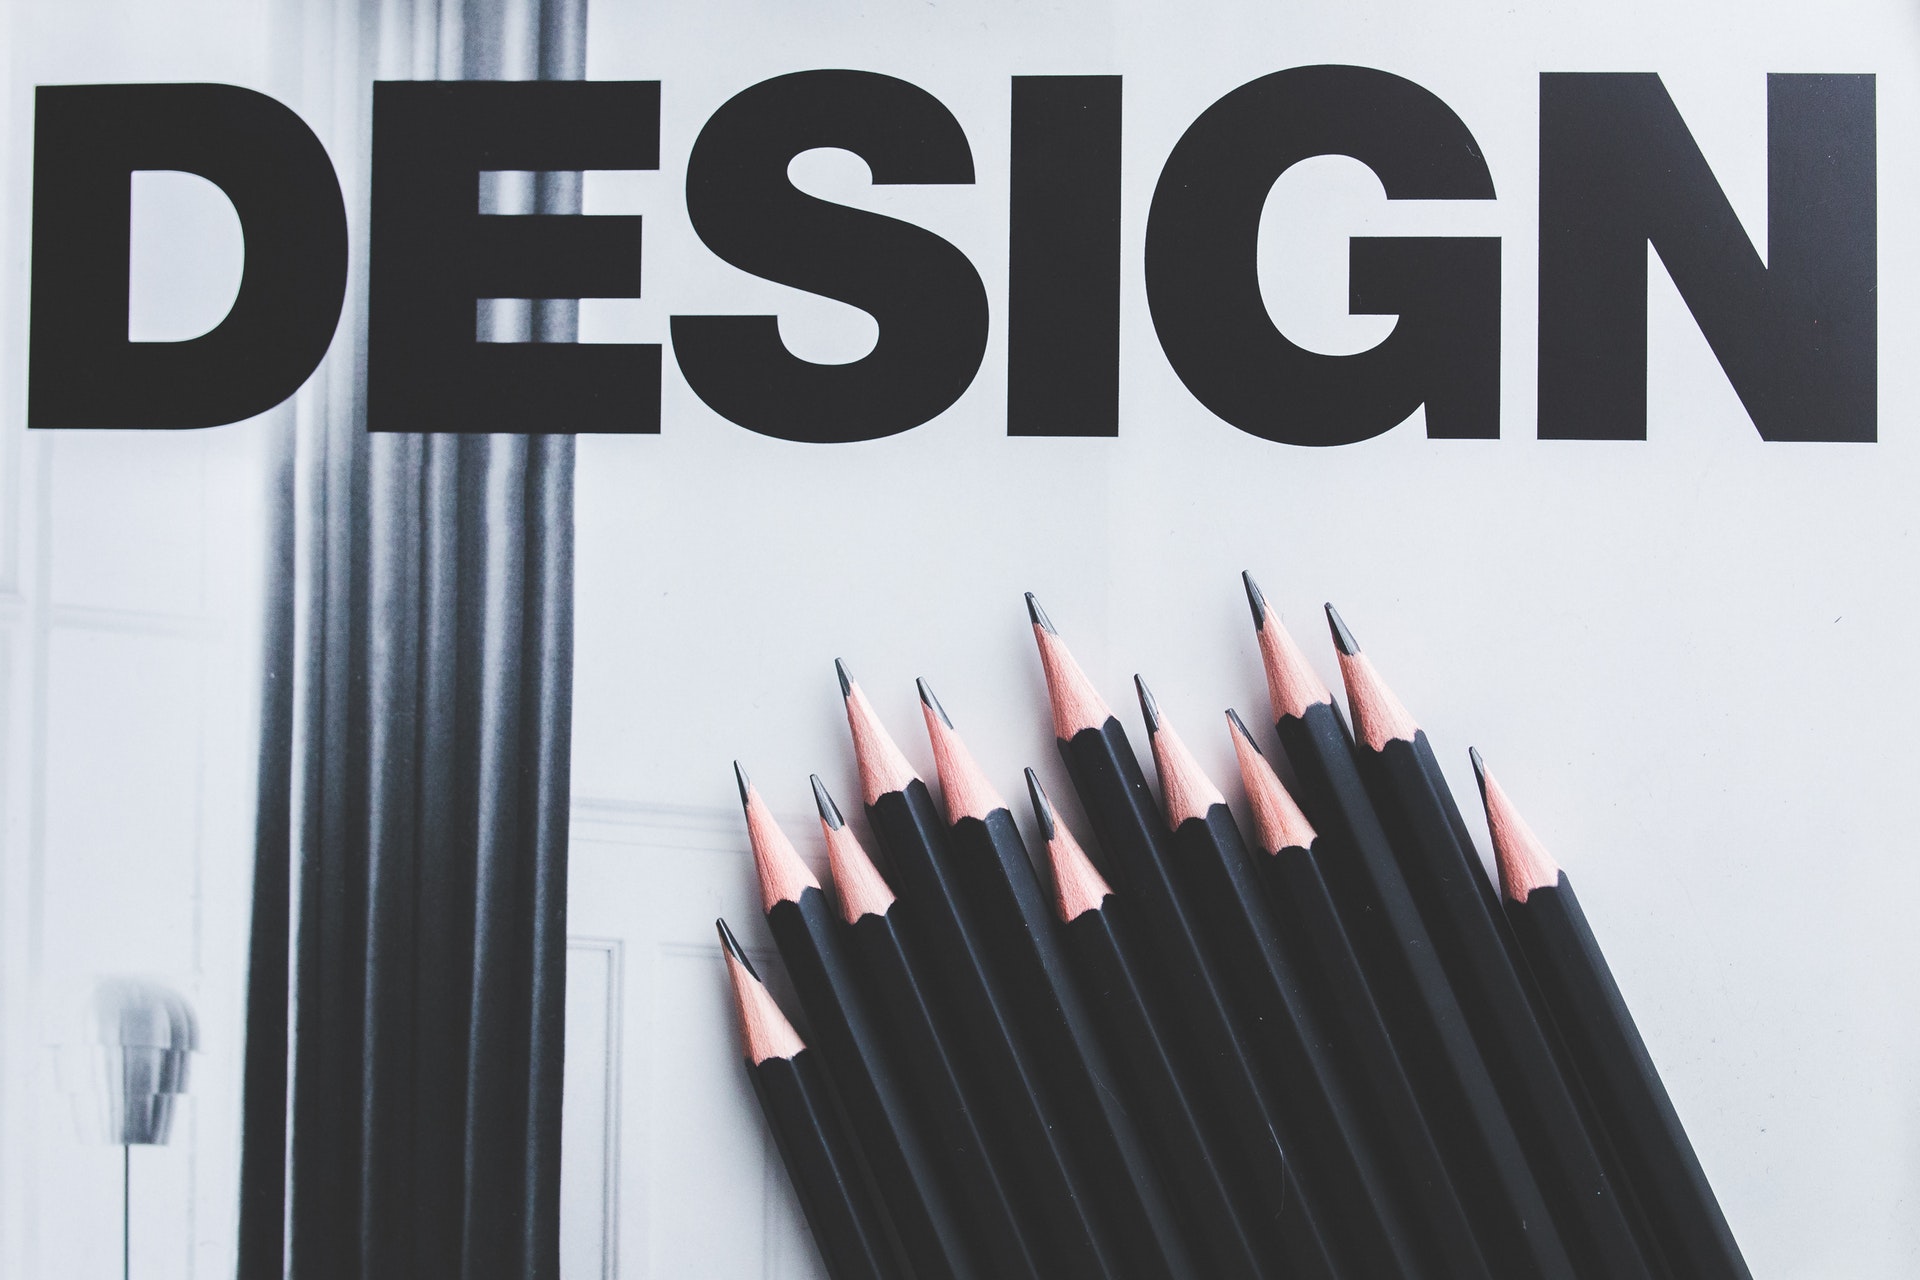 Website Design Tips For Beginners